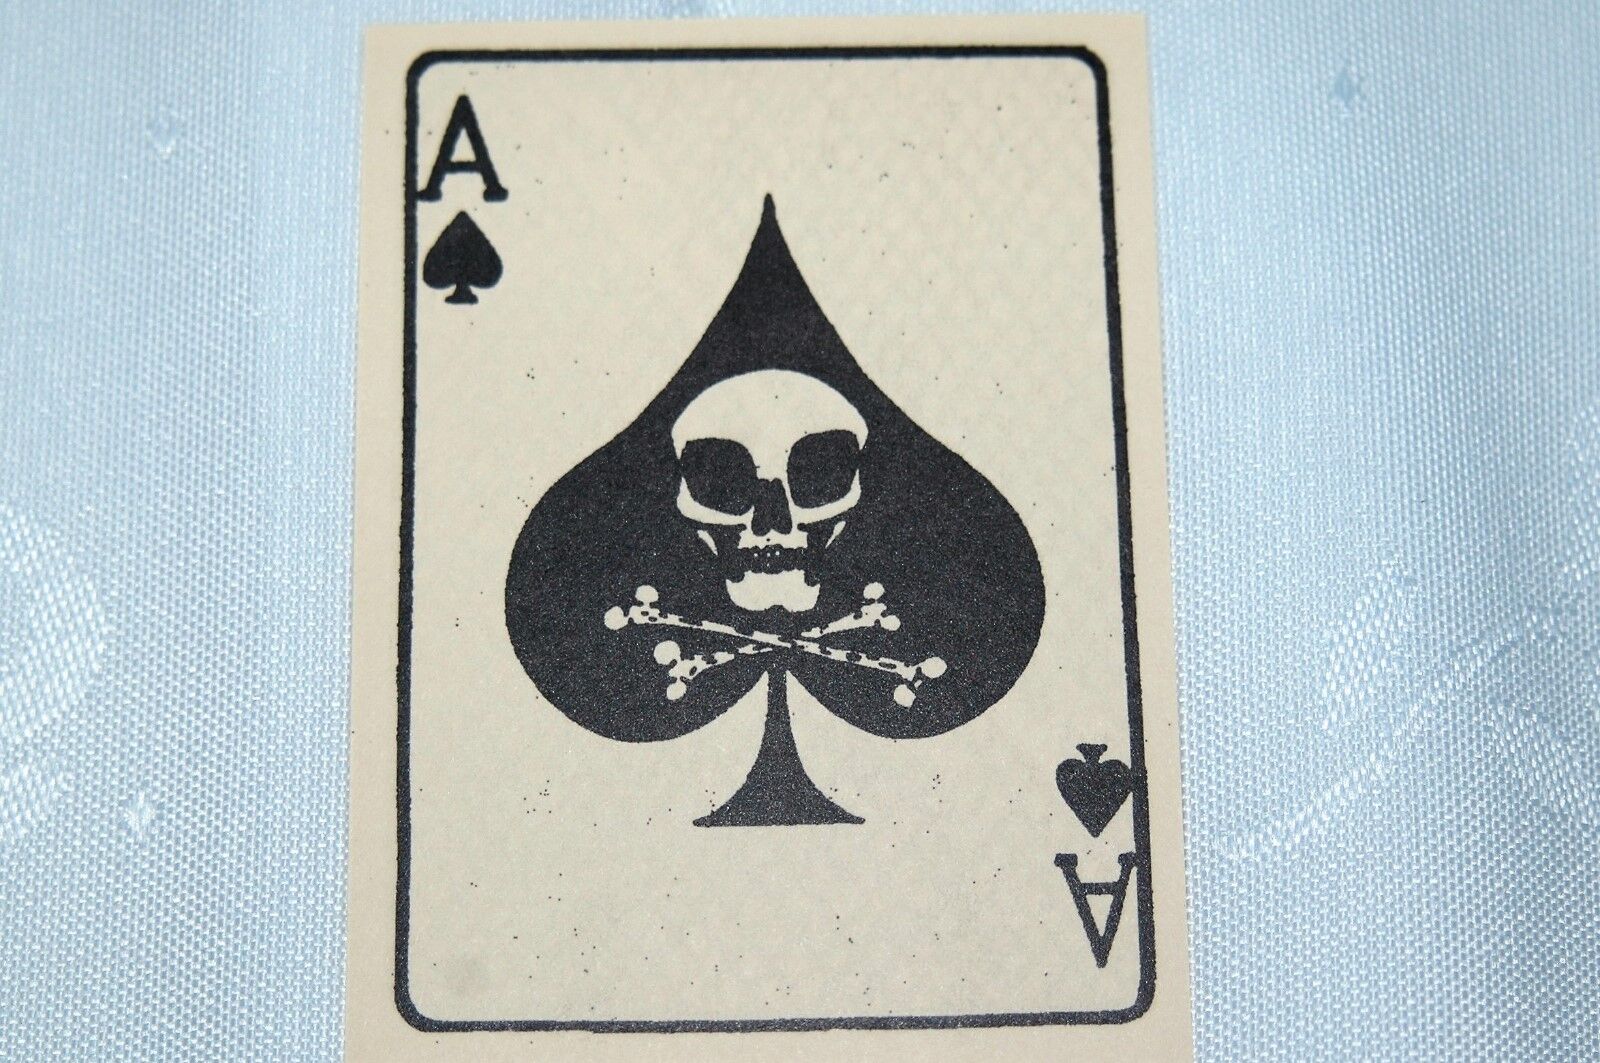  Vietnam War Ace of Spades Death Card  